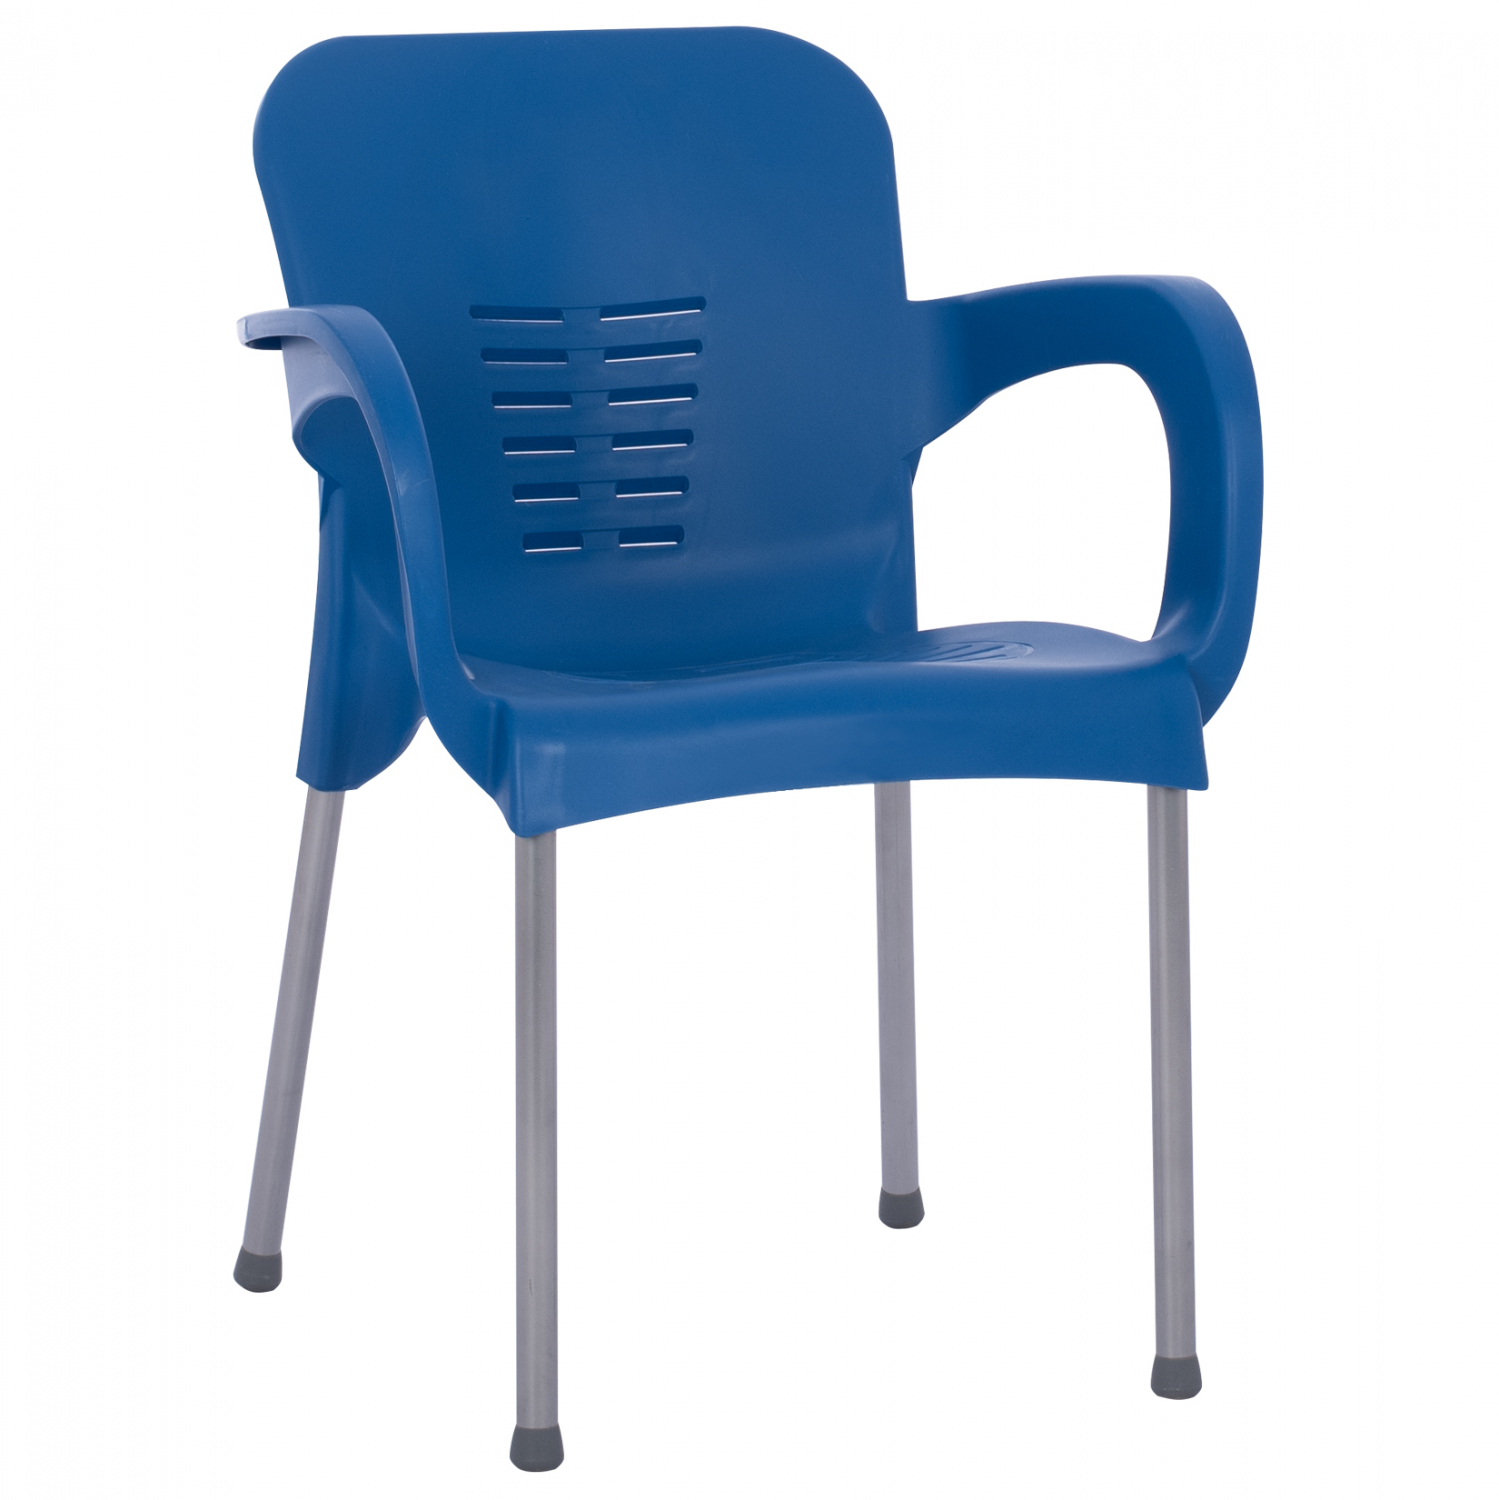 Πολυθρόνα από PP/αλουμίνιο σε μπλε/ασημί χρώμα 59x58x81